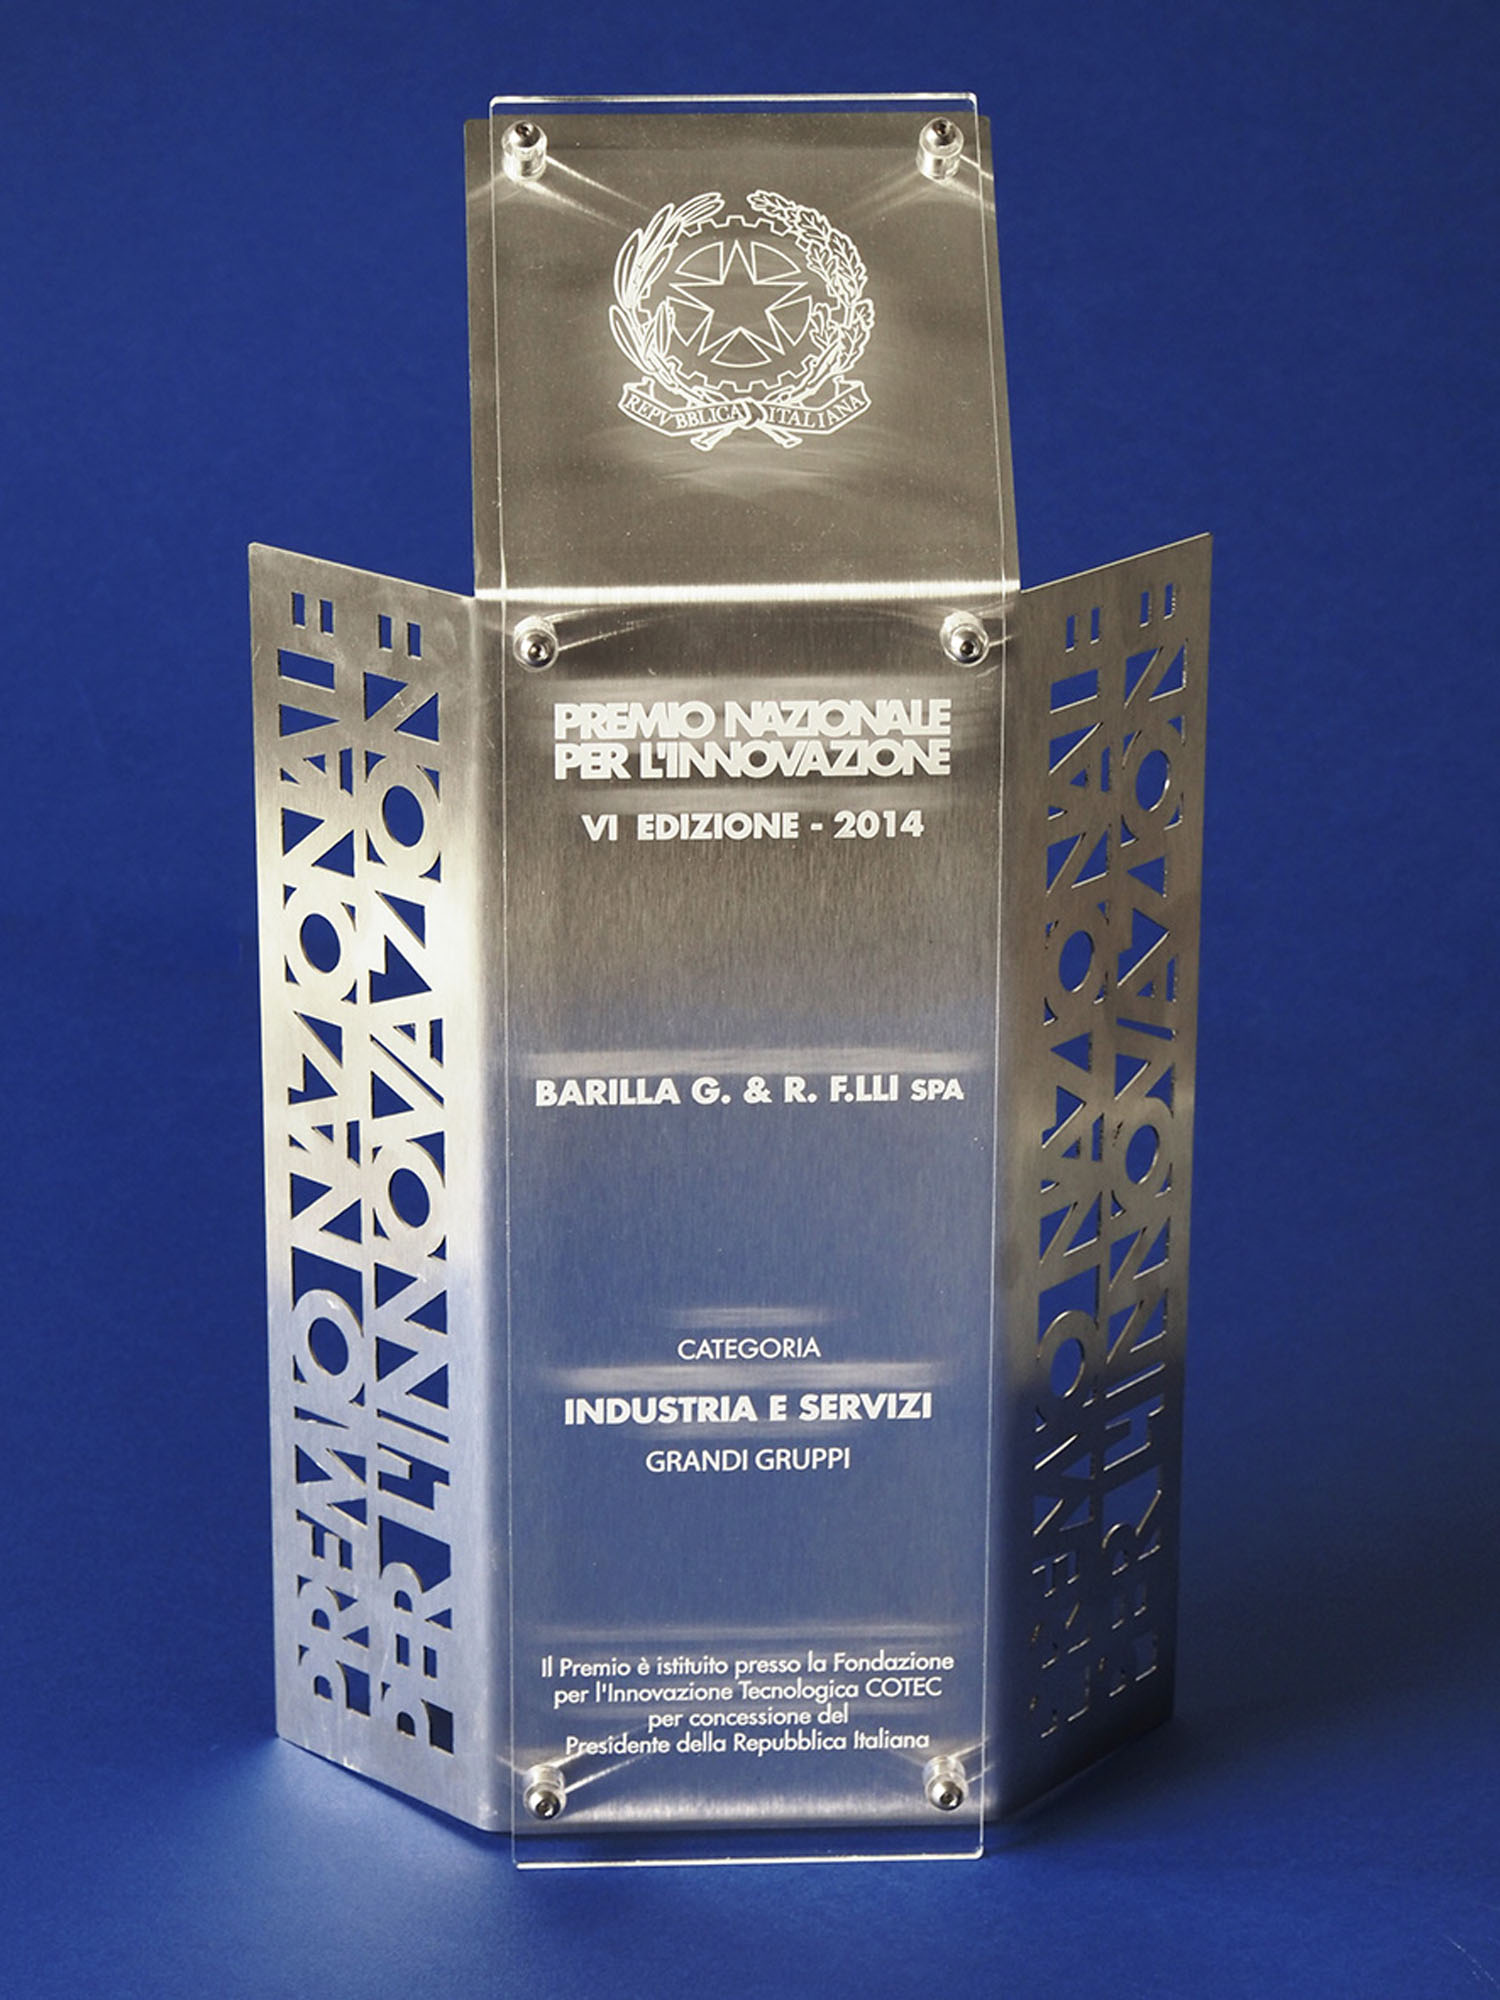 2014 - Premio Nazionale per l’Innovazione. VI edizione – Fondazione per l’Innovazione Tecnologica COTEC